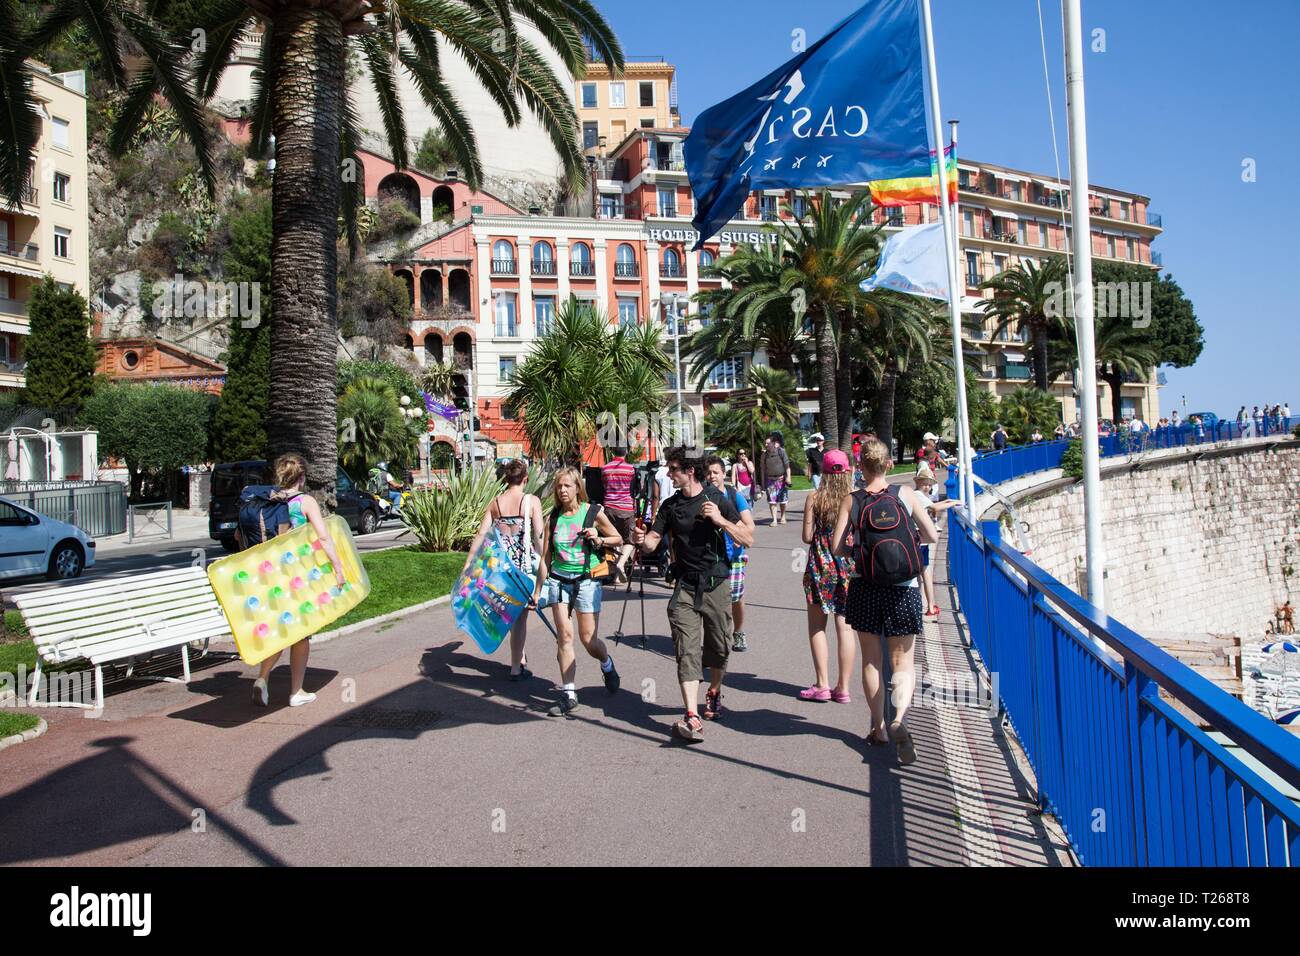 2013-07-03 NICE La Ville de Nice sur la côte d'Azur. Les touristes sur la Promenade des Anglais. Jeppe Photo Gustafsson Banque D'Images